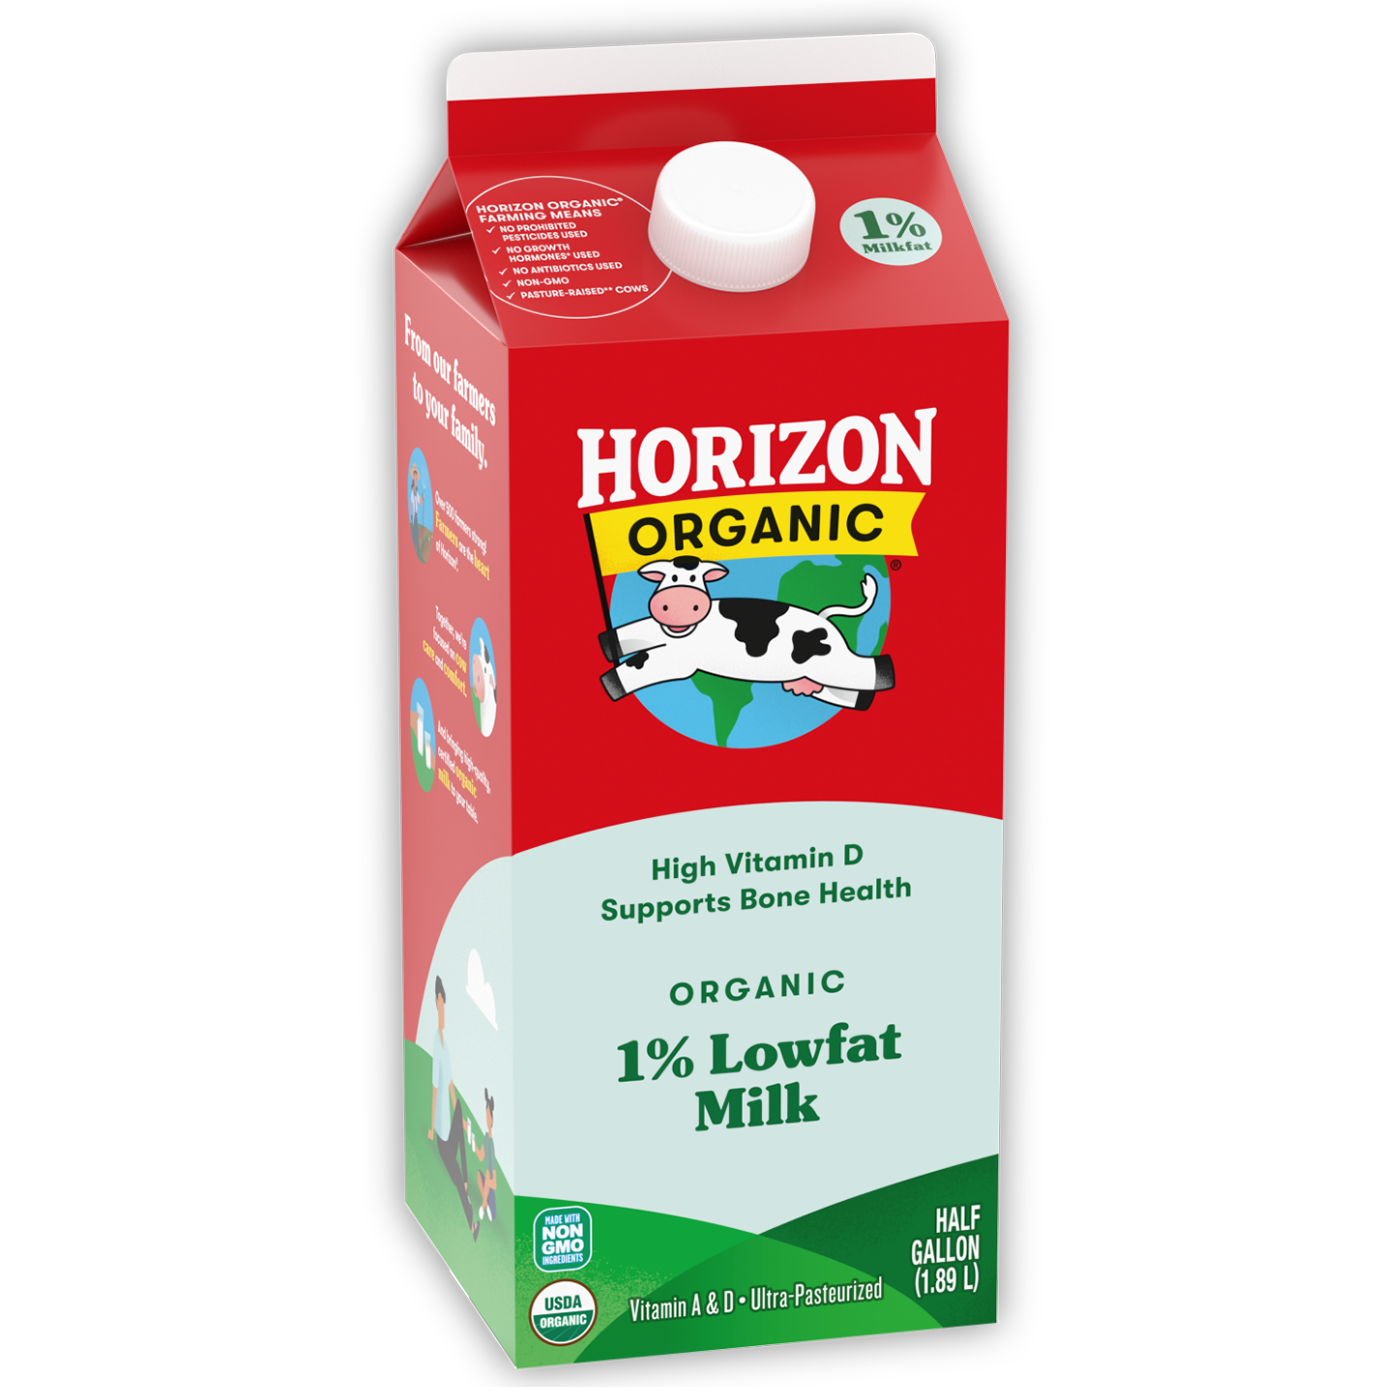 Horizon Organic 1% Milk Half Gallon